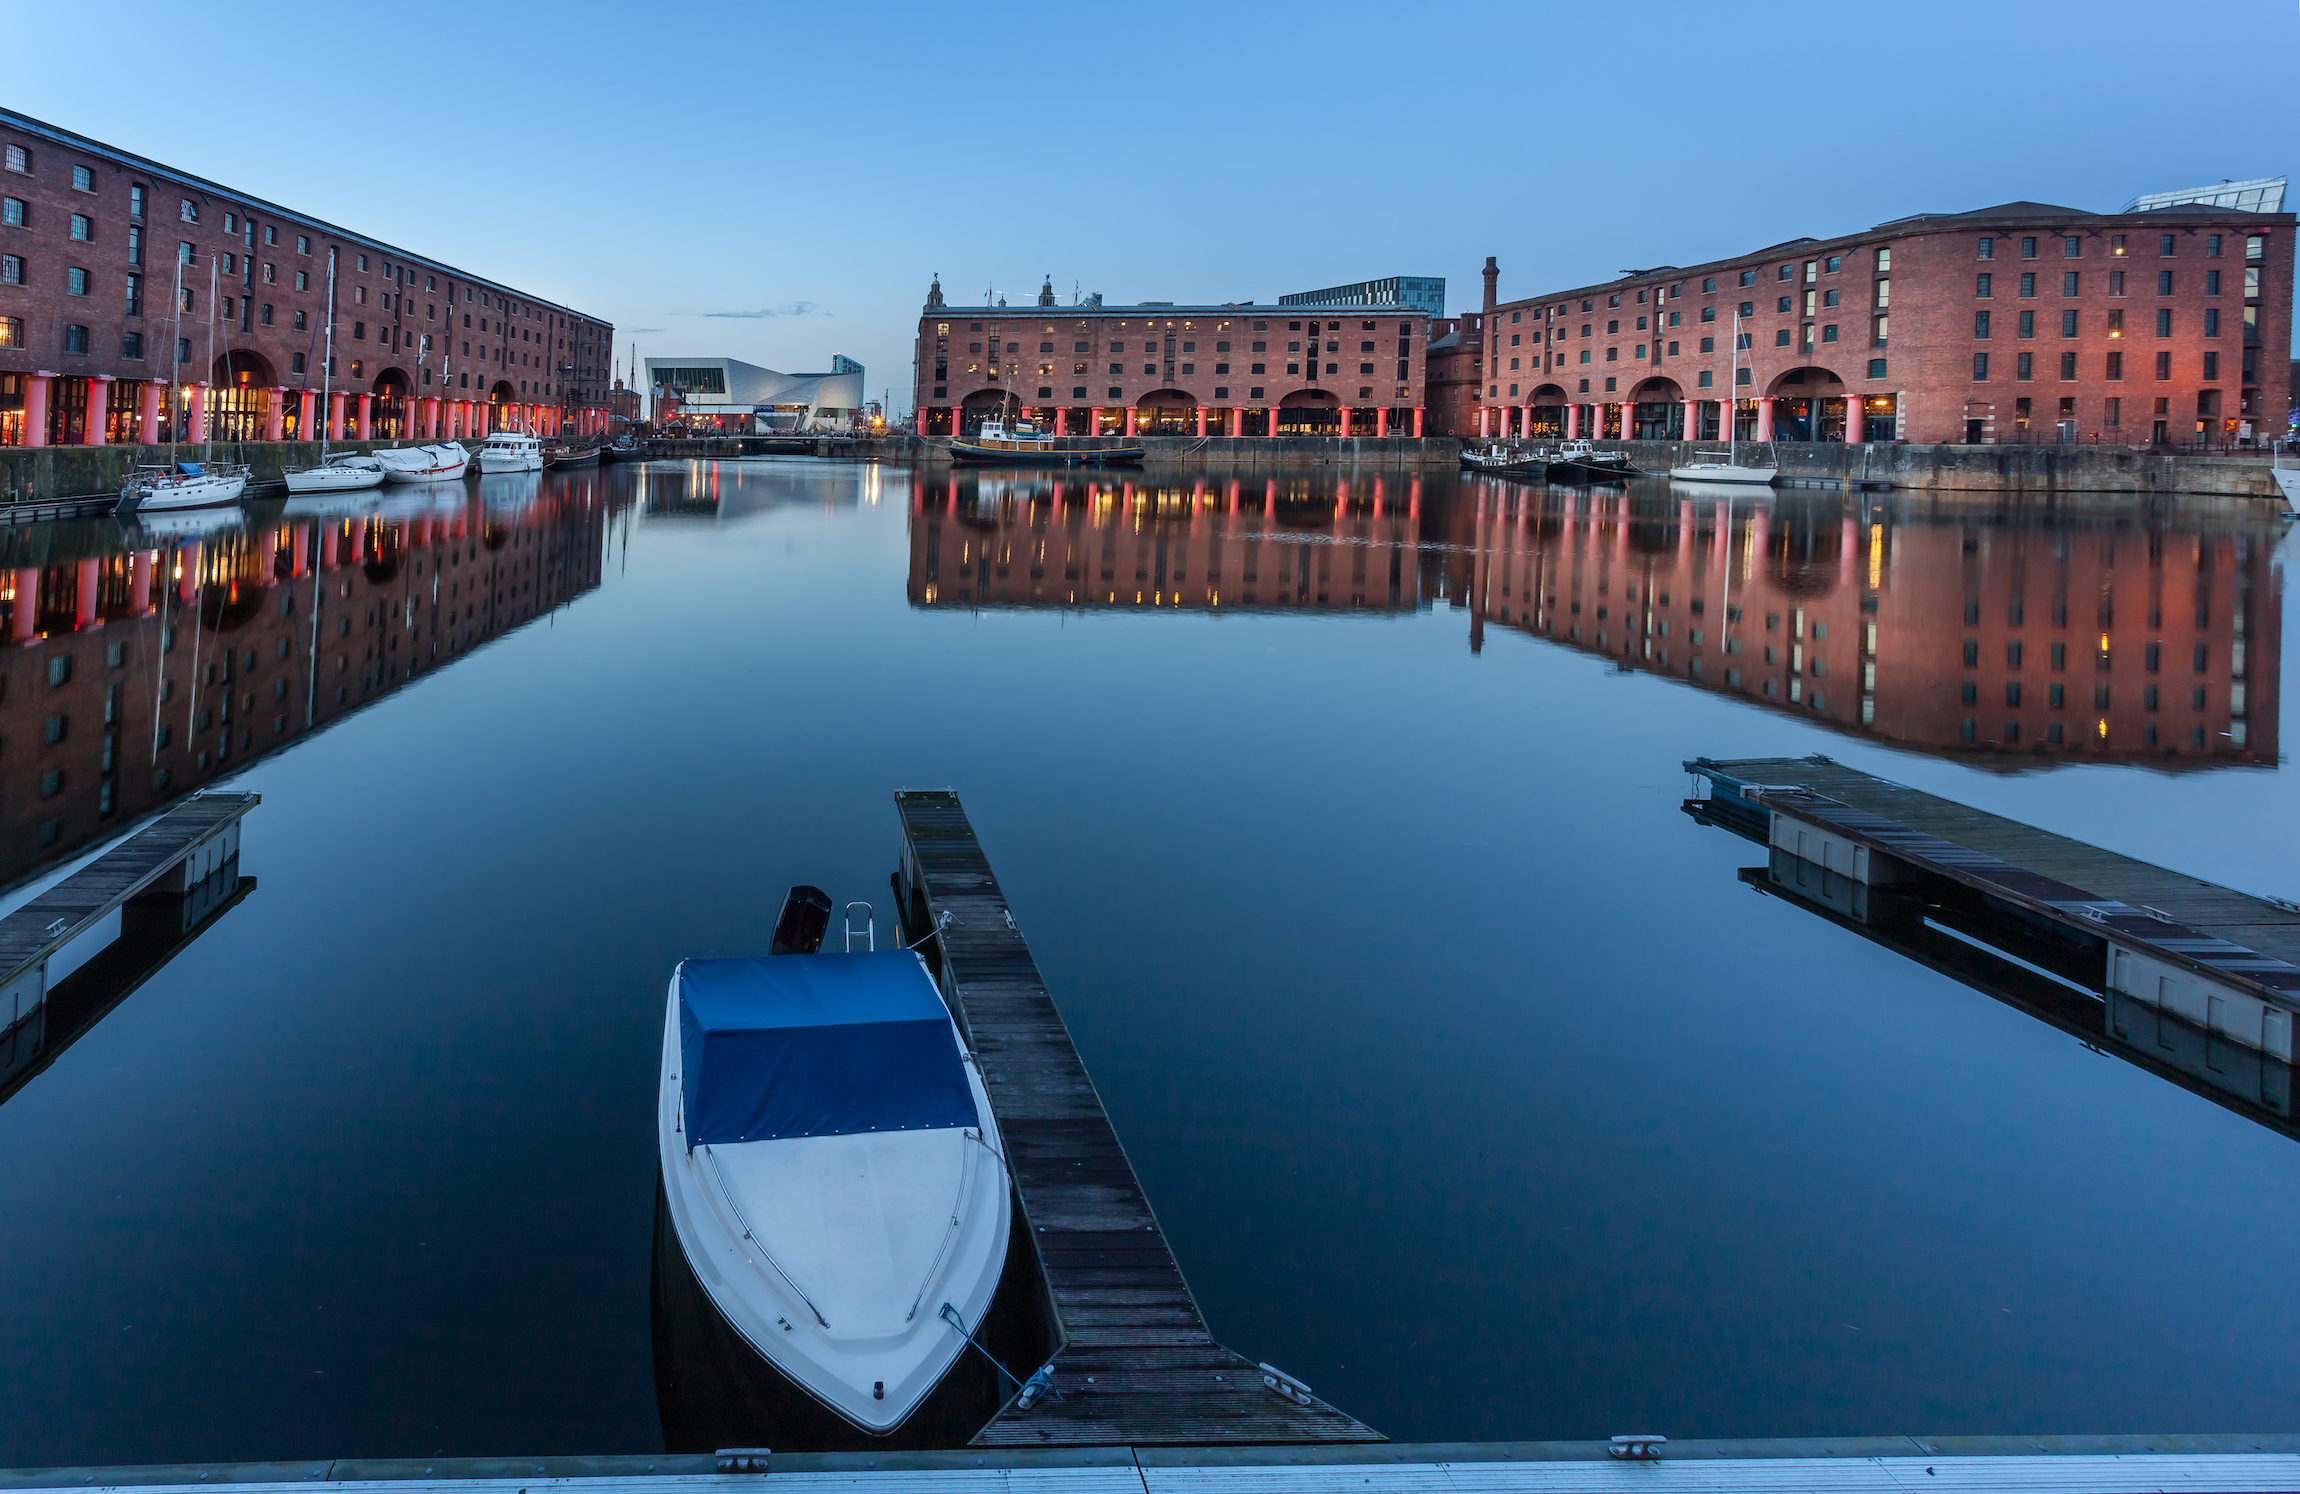 Albert Dock to atrakcja turystyczna nad brzegiem rzeki Mersey i nabrzeża Liverpoolu w Anglii.